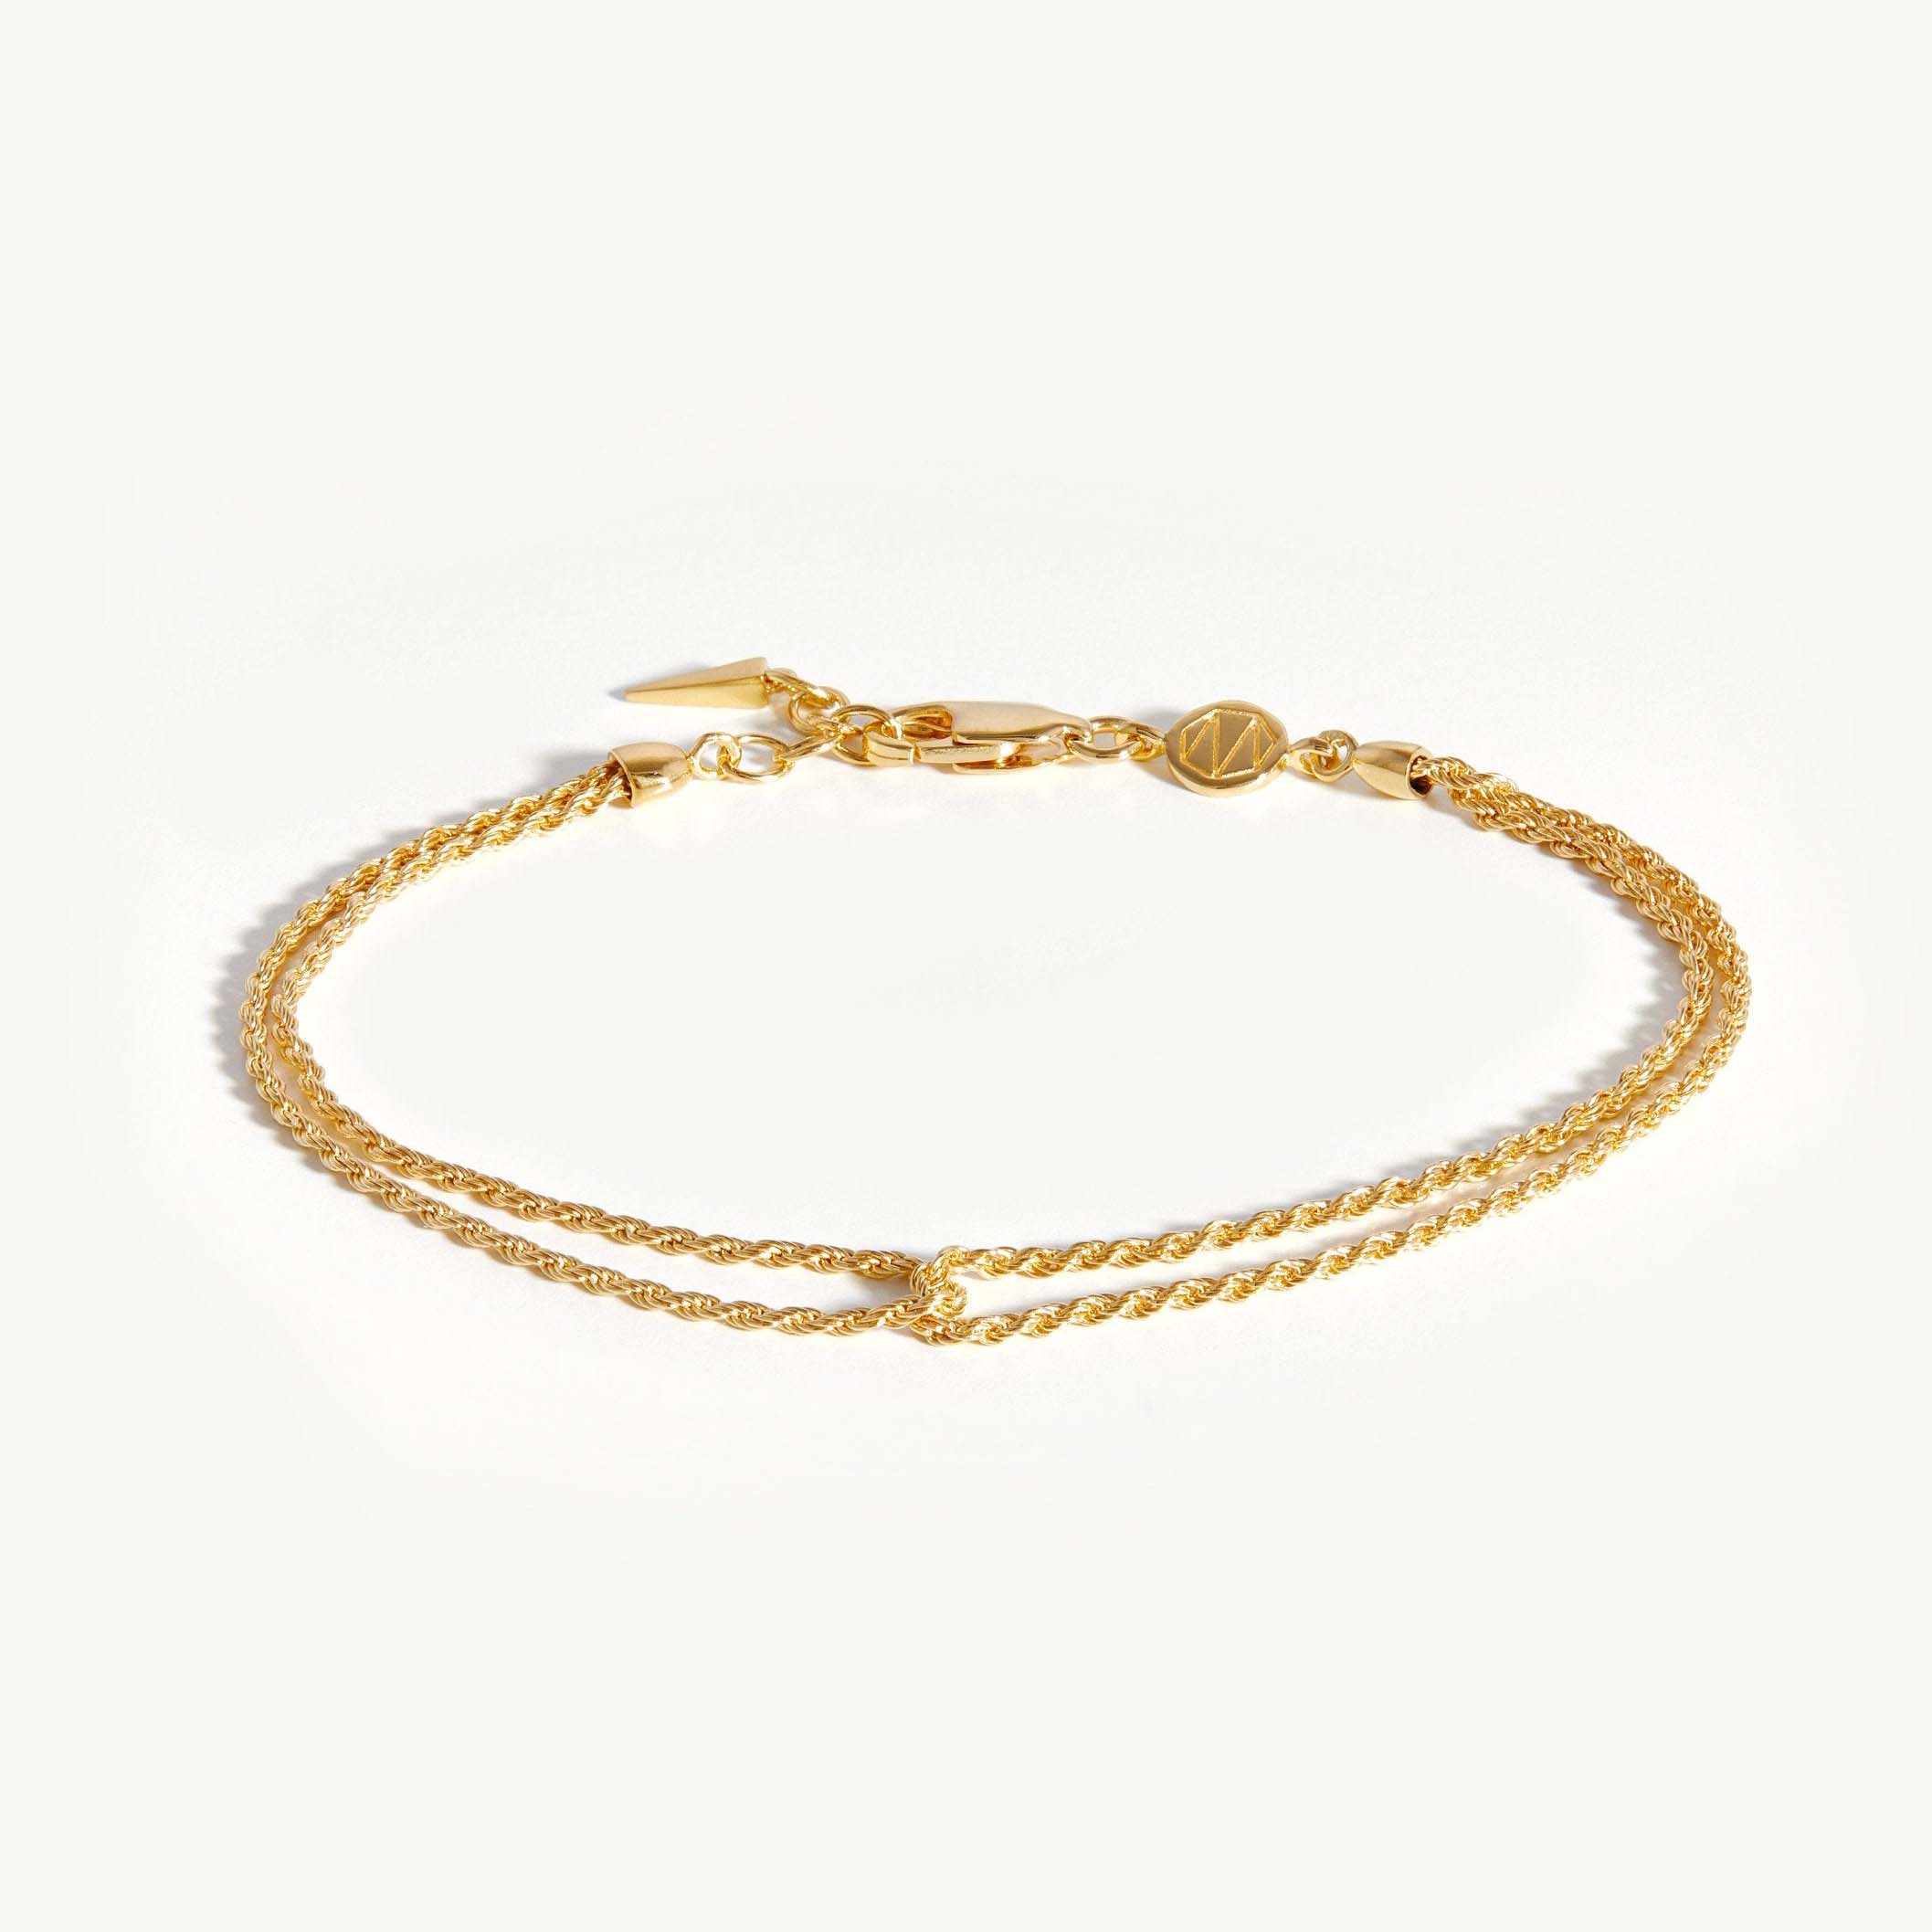 Diseños de joyería personalizados y joyería de pulsera chapada en oro al por mayor con MOQ bajo